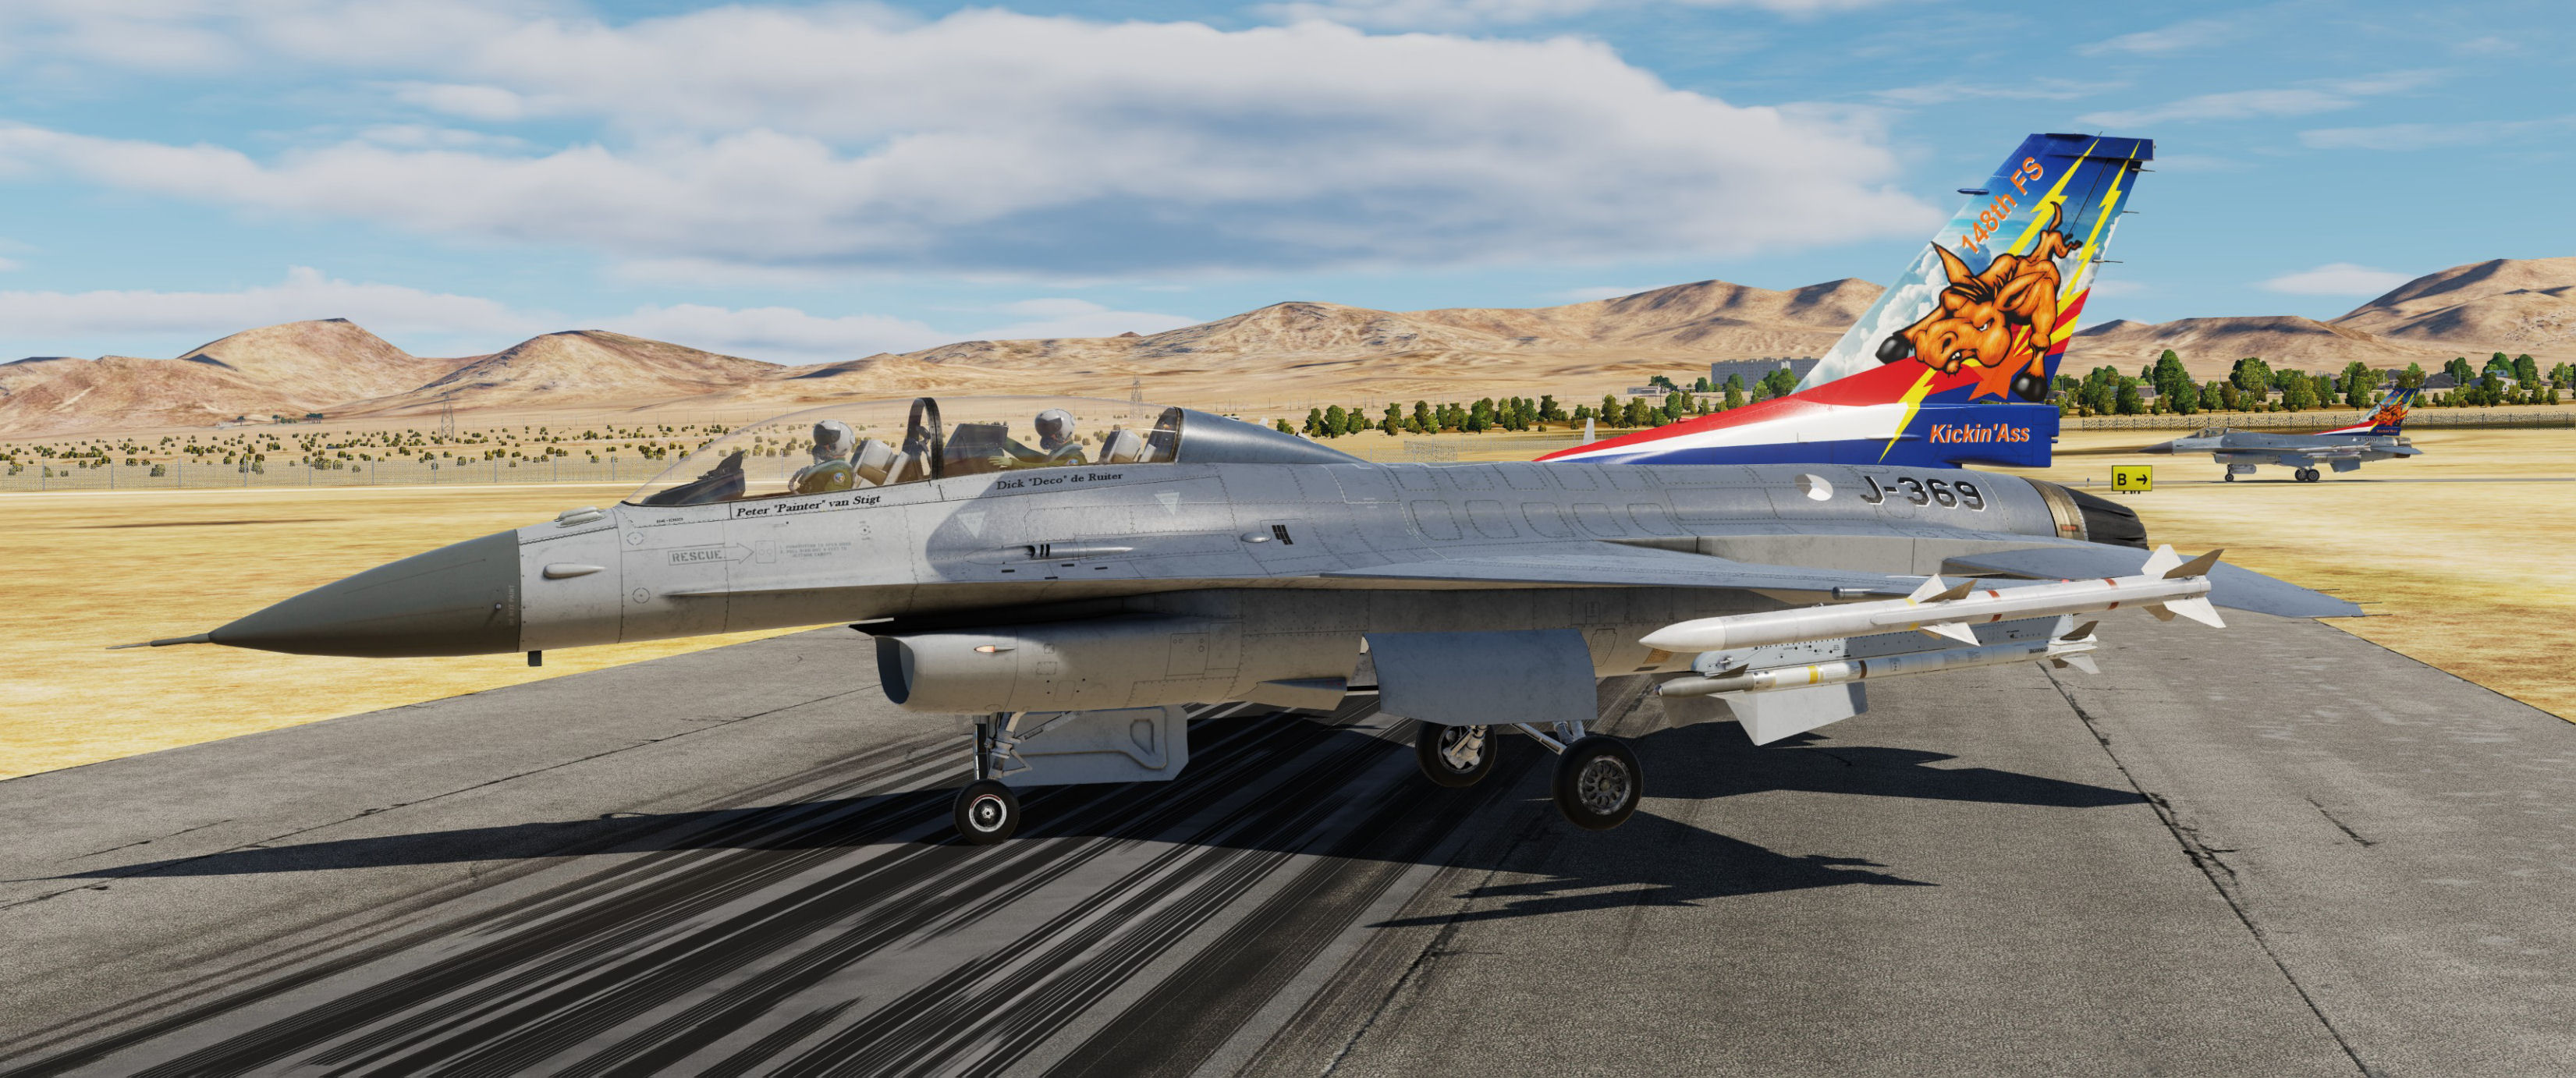 F-16D(BM) SUFA Mod J-369 - Special Tail Design - 148 FS Kickin' Ass, the RNLAF F-16 OCU